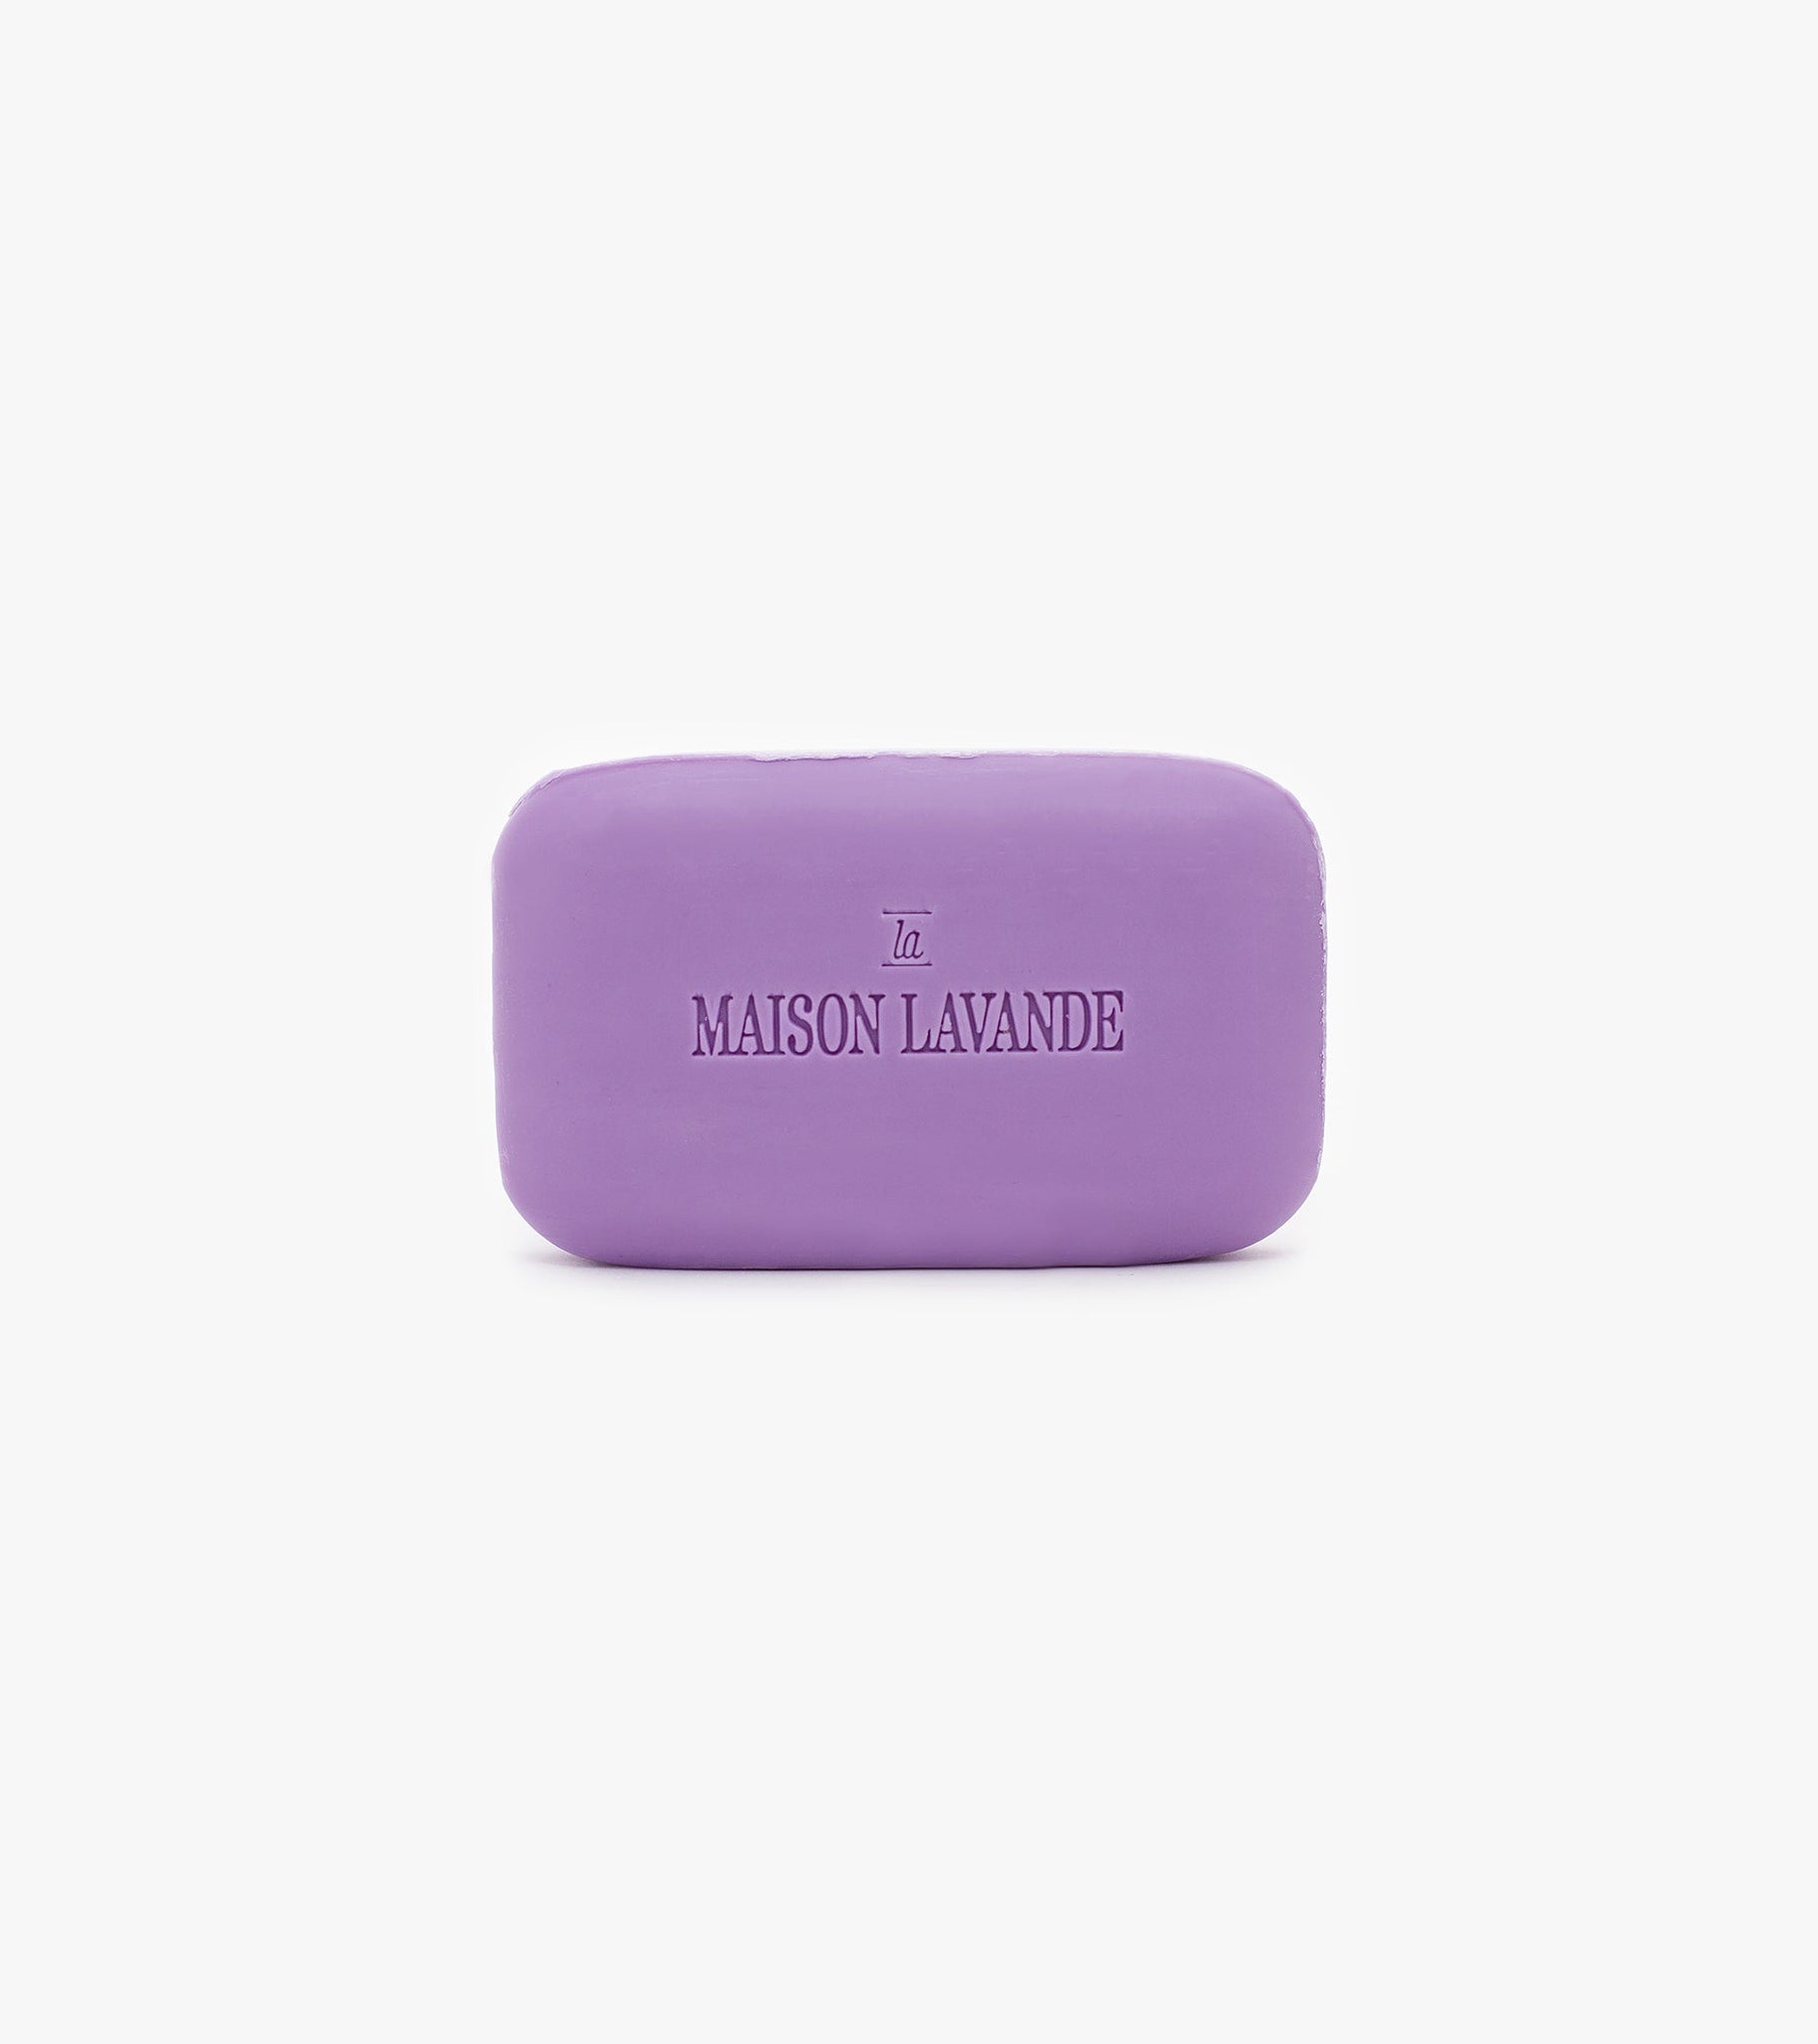 Savon en barre - Pure Lavande||Soap - Pure Lavender